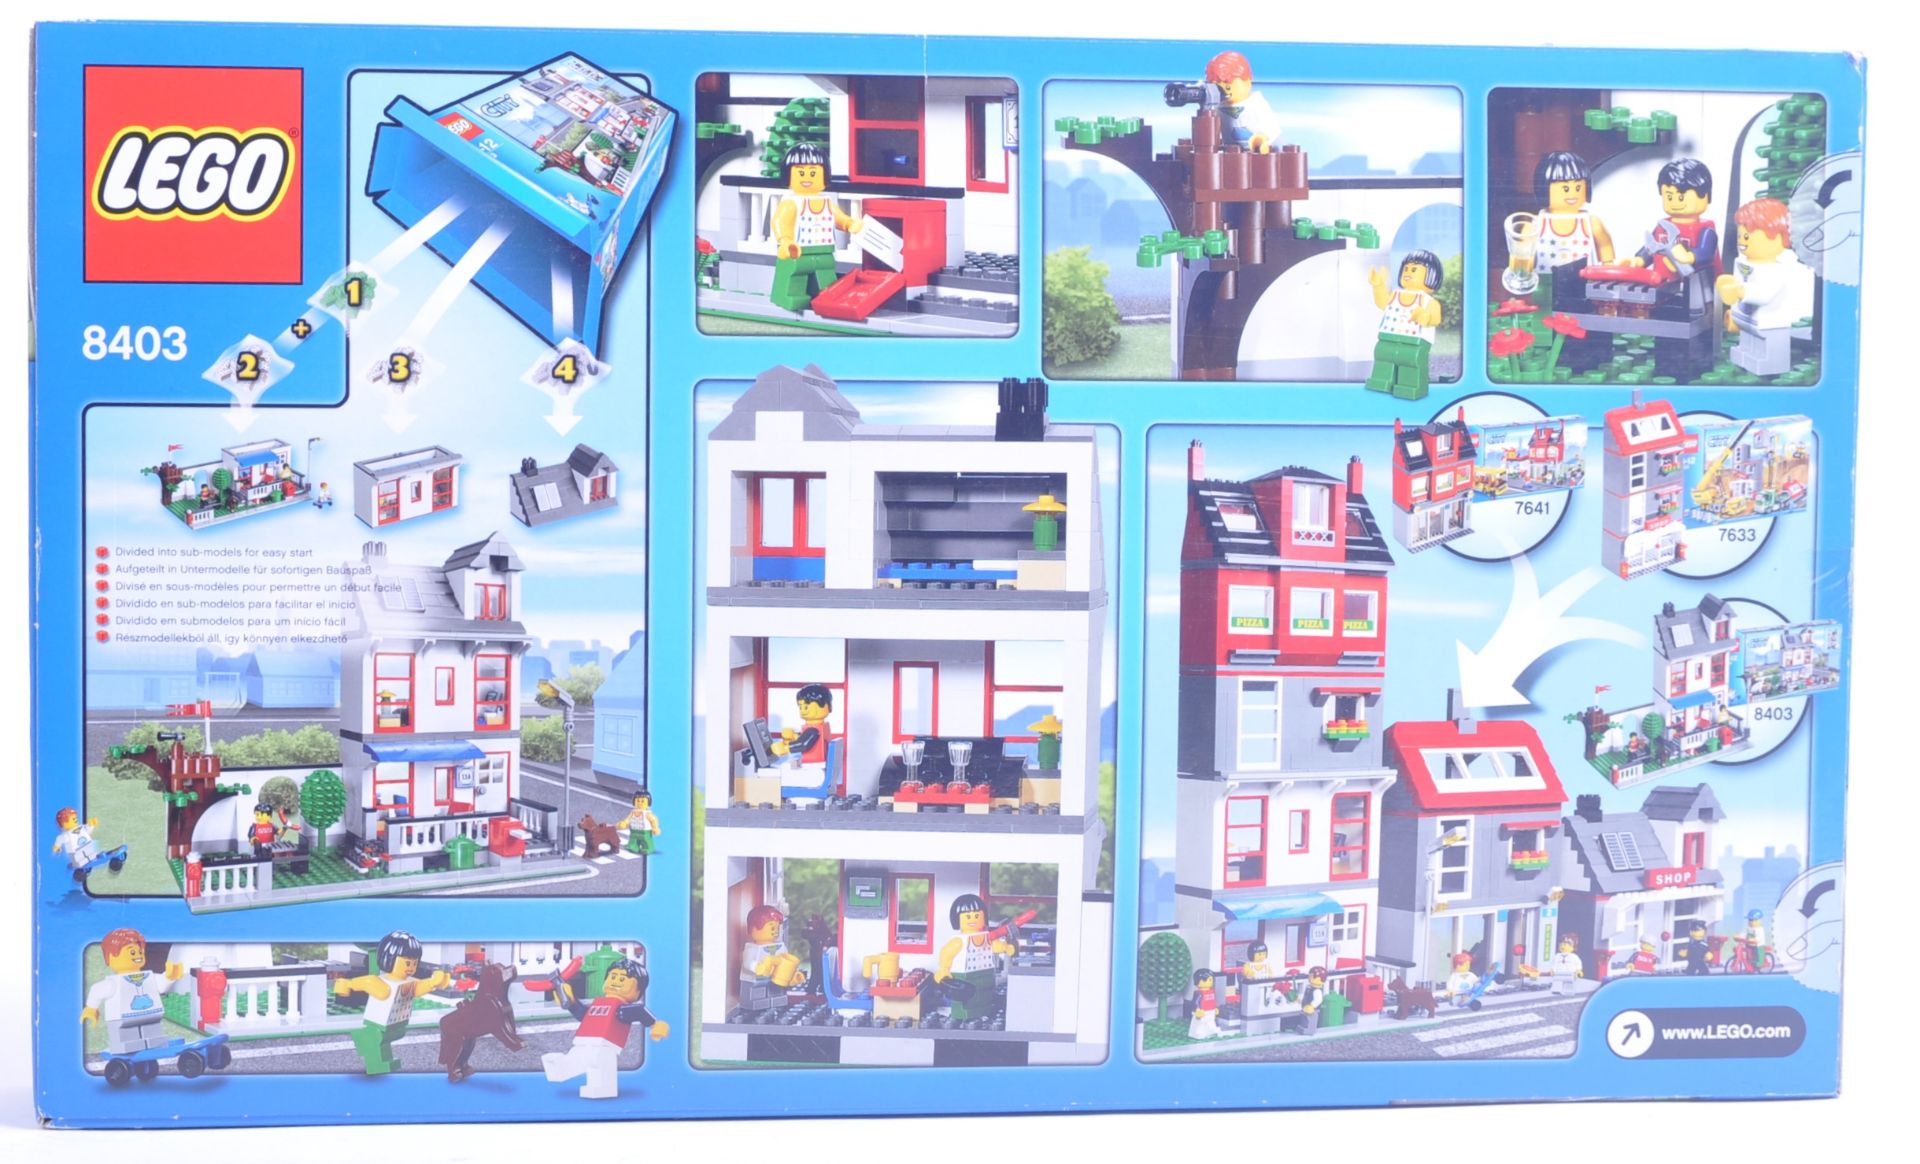 LEGO SET - LEGO CITY - 8403 - CITY HOUSE - Image 2 of 4